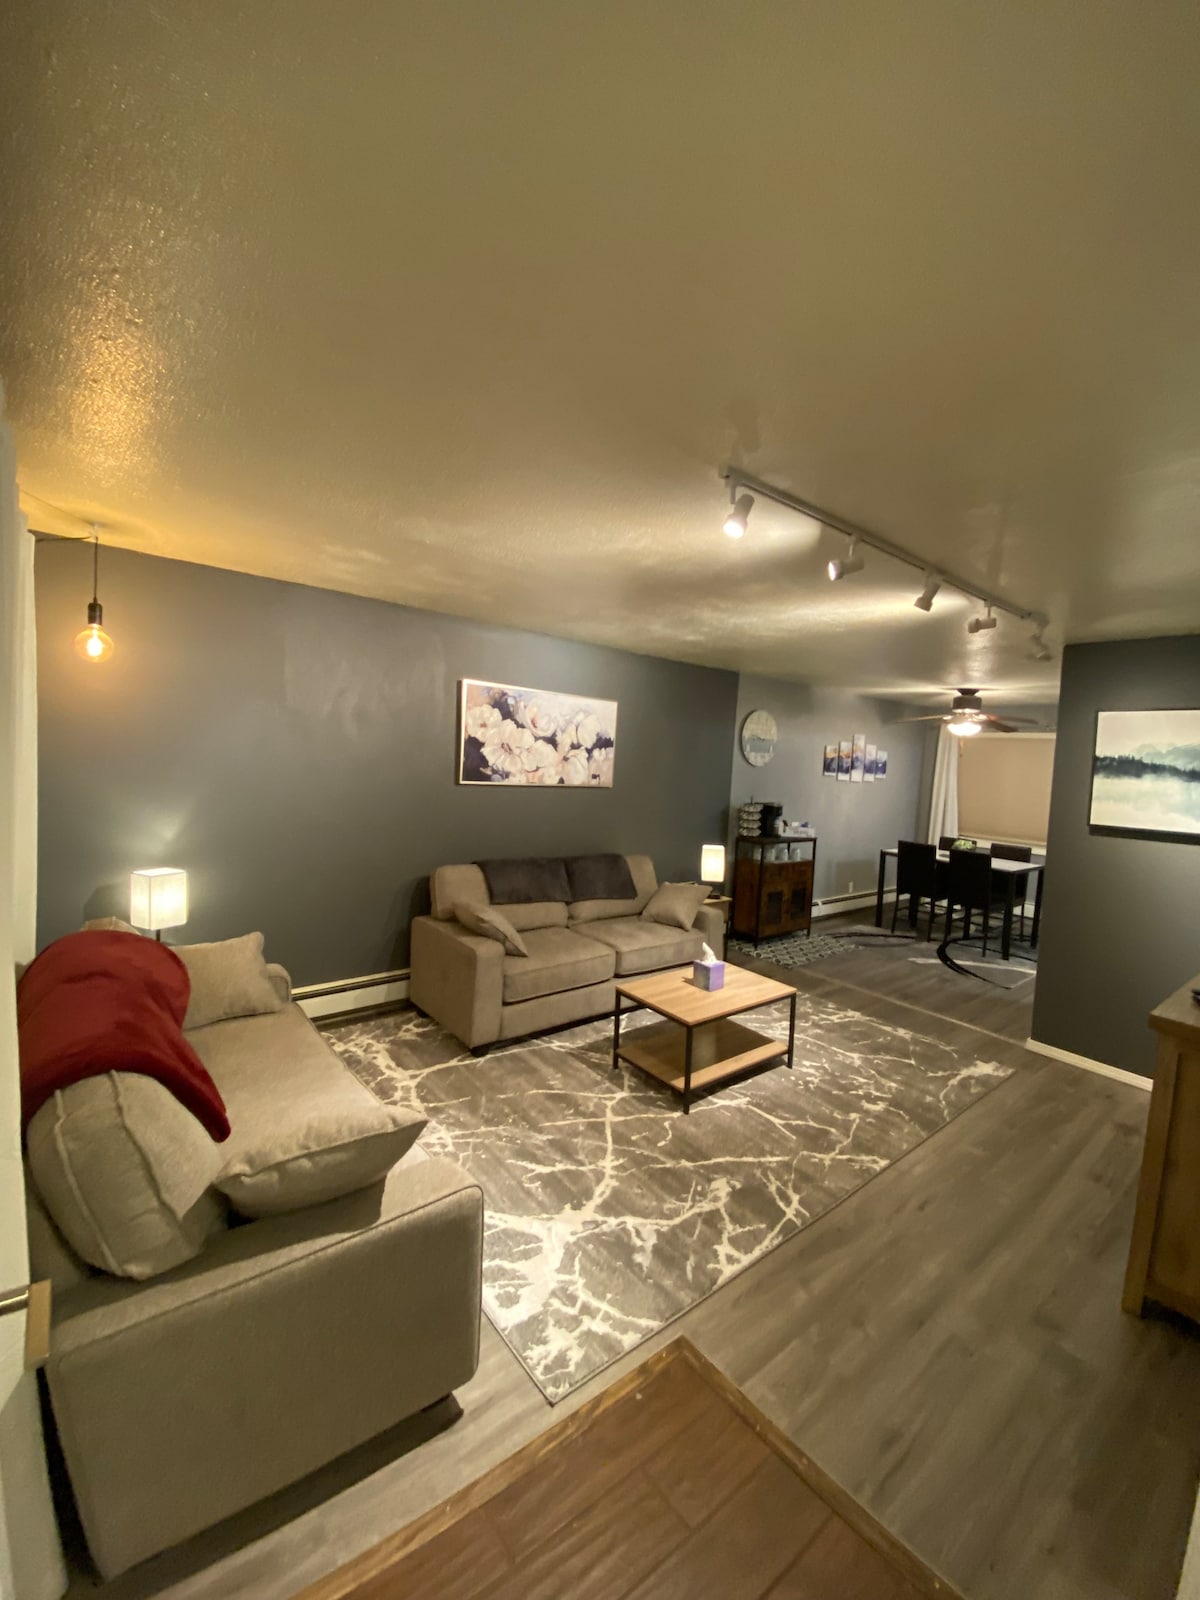 Cozy 2-bedroom Duplex home in Fairbanks